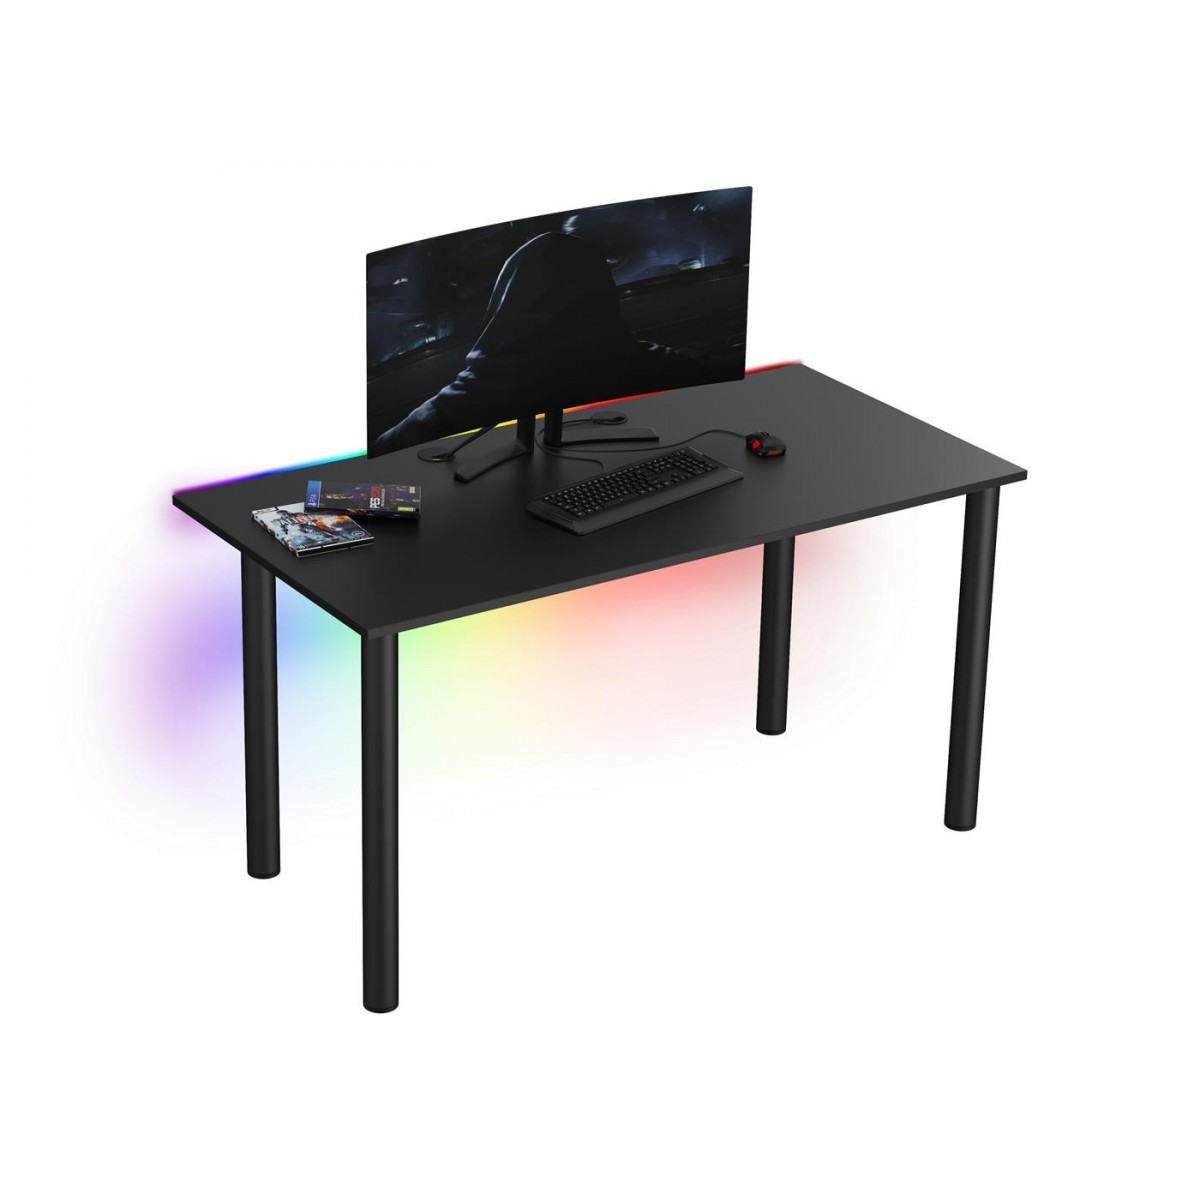  Tanie biurko dla gracza Basia XL czarne LED pilot przelotka 68x138cm